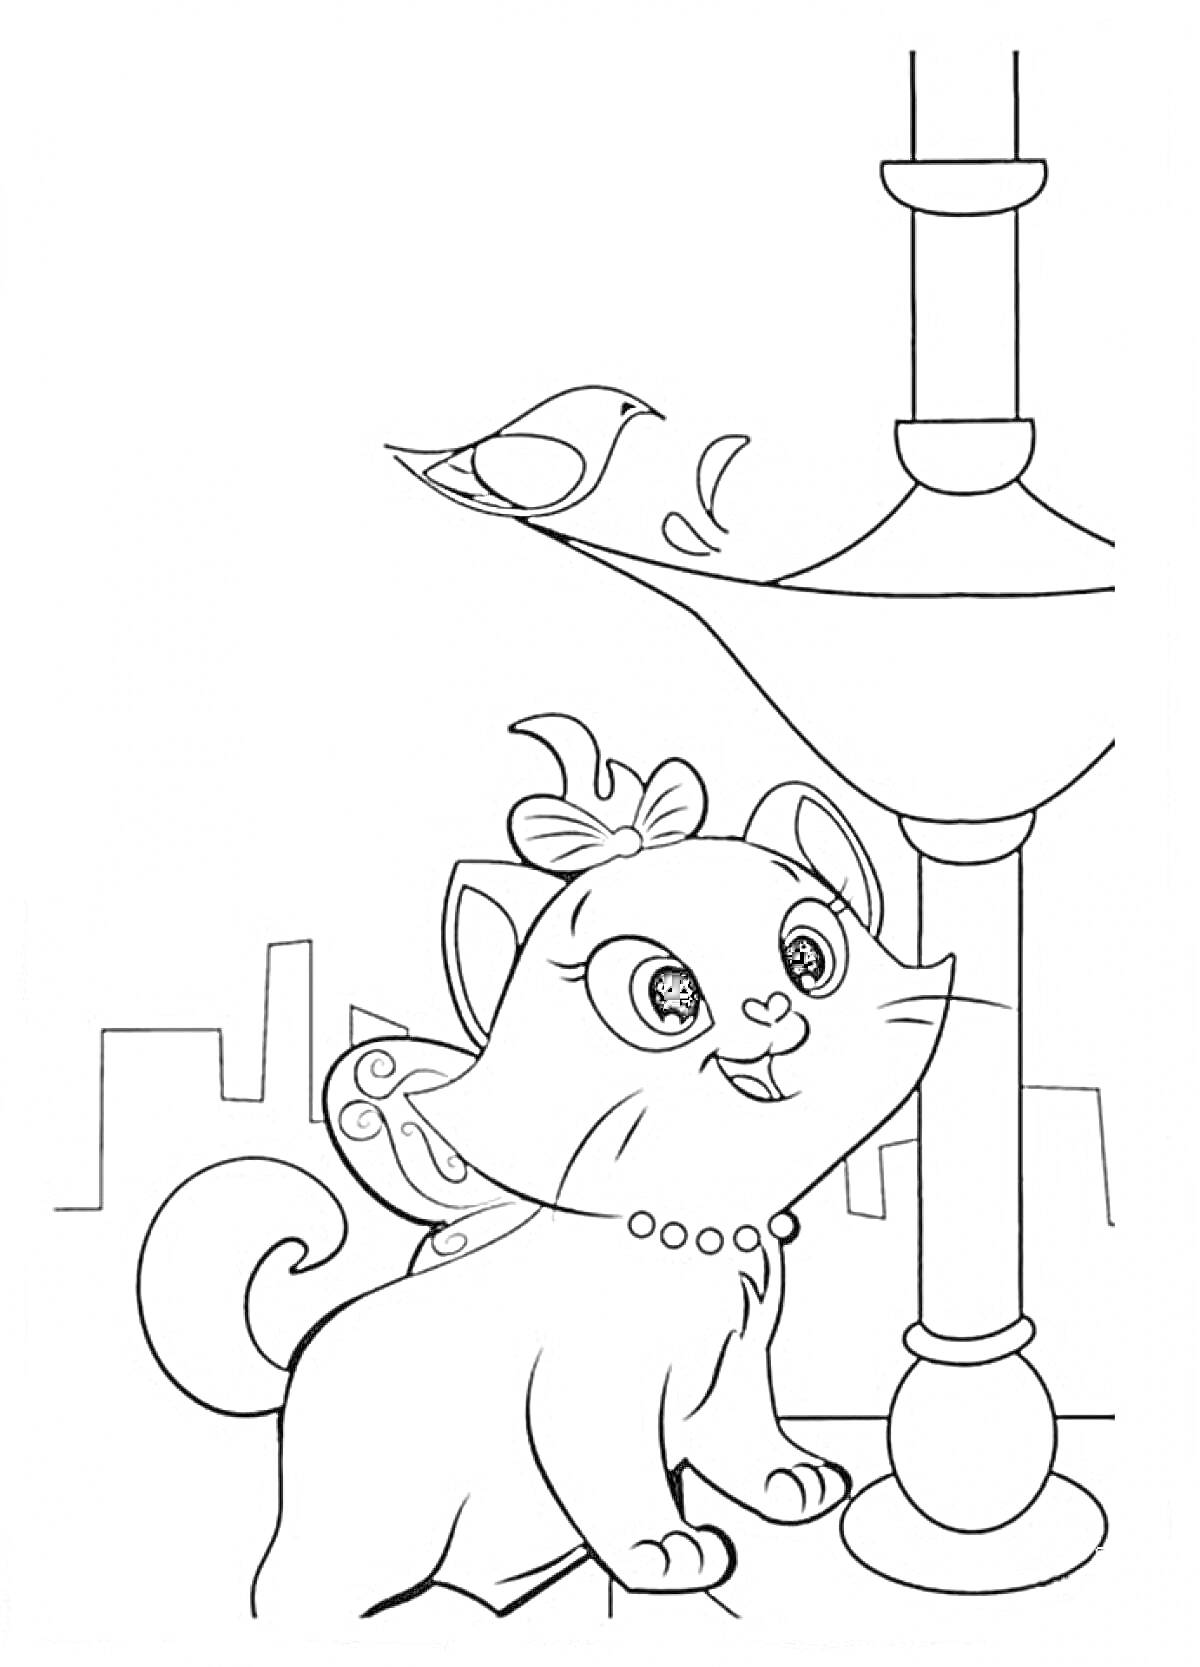 Раскраска Кошка Мари с бантом и ожерельем, фонарь, птичка в городе